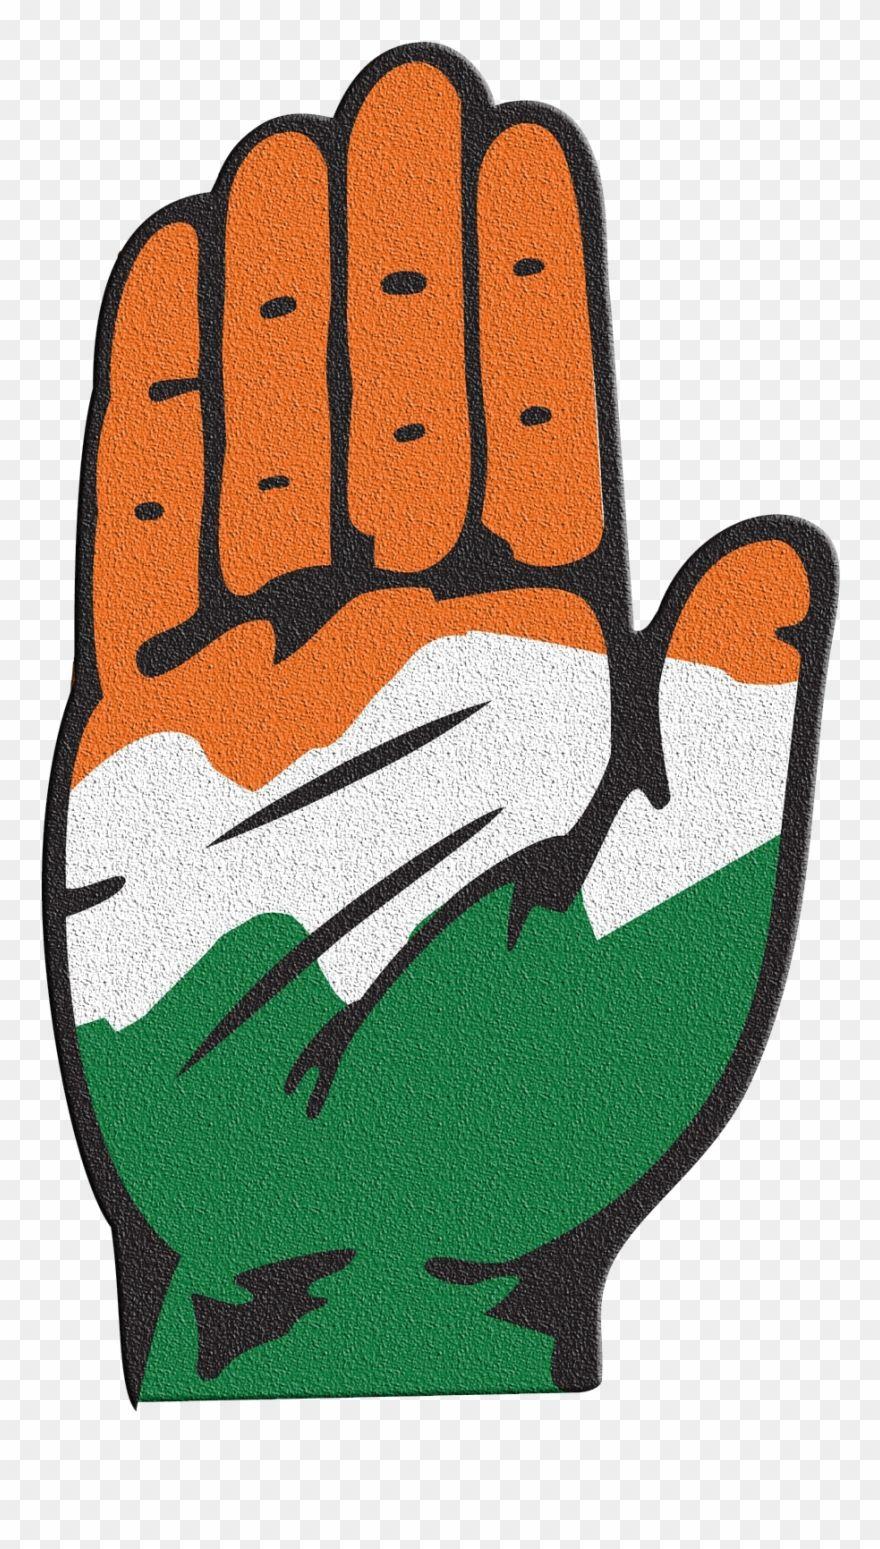 Congress Logo - Congress Logo Png Transparent Image - Indian National Congress Logo ...